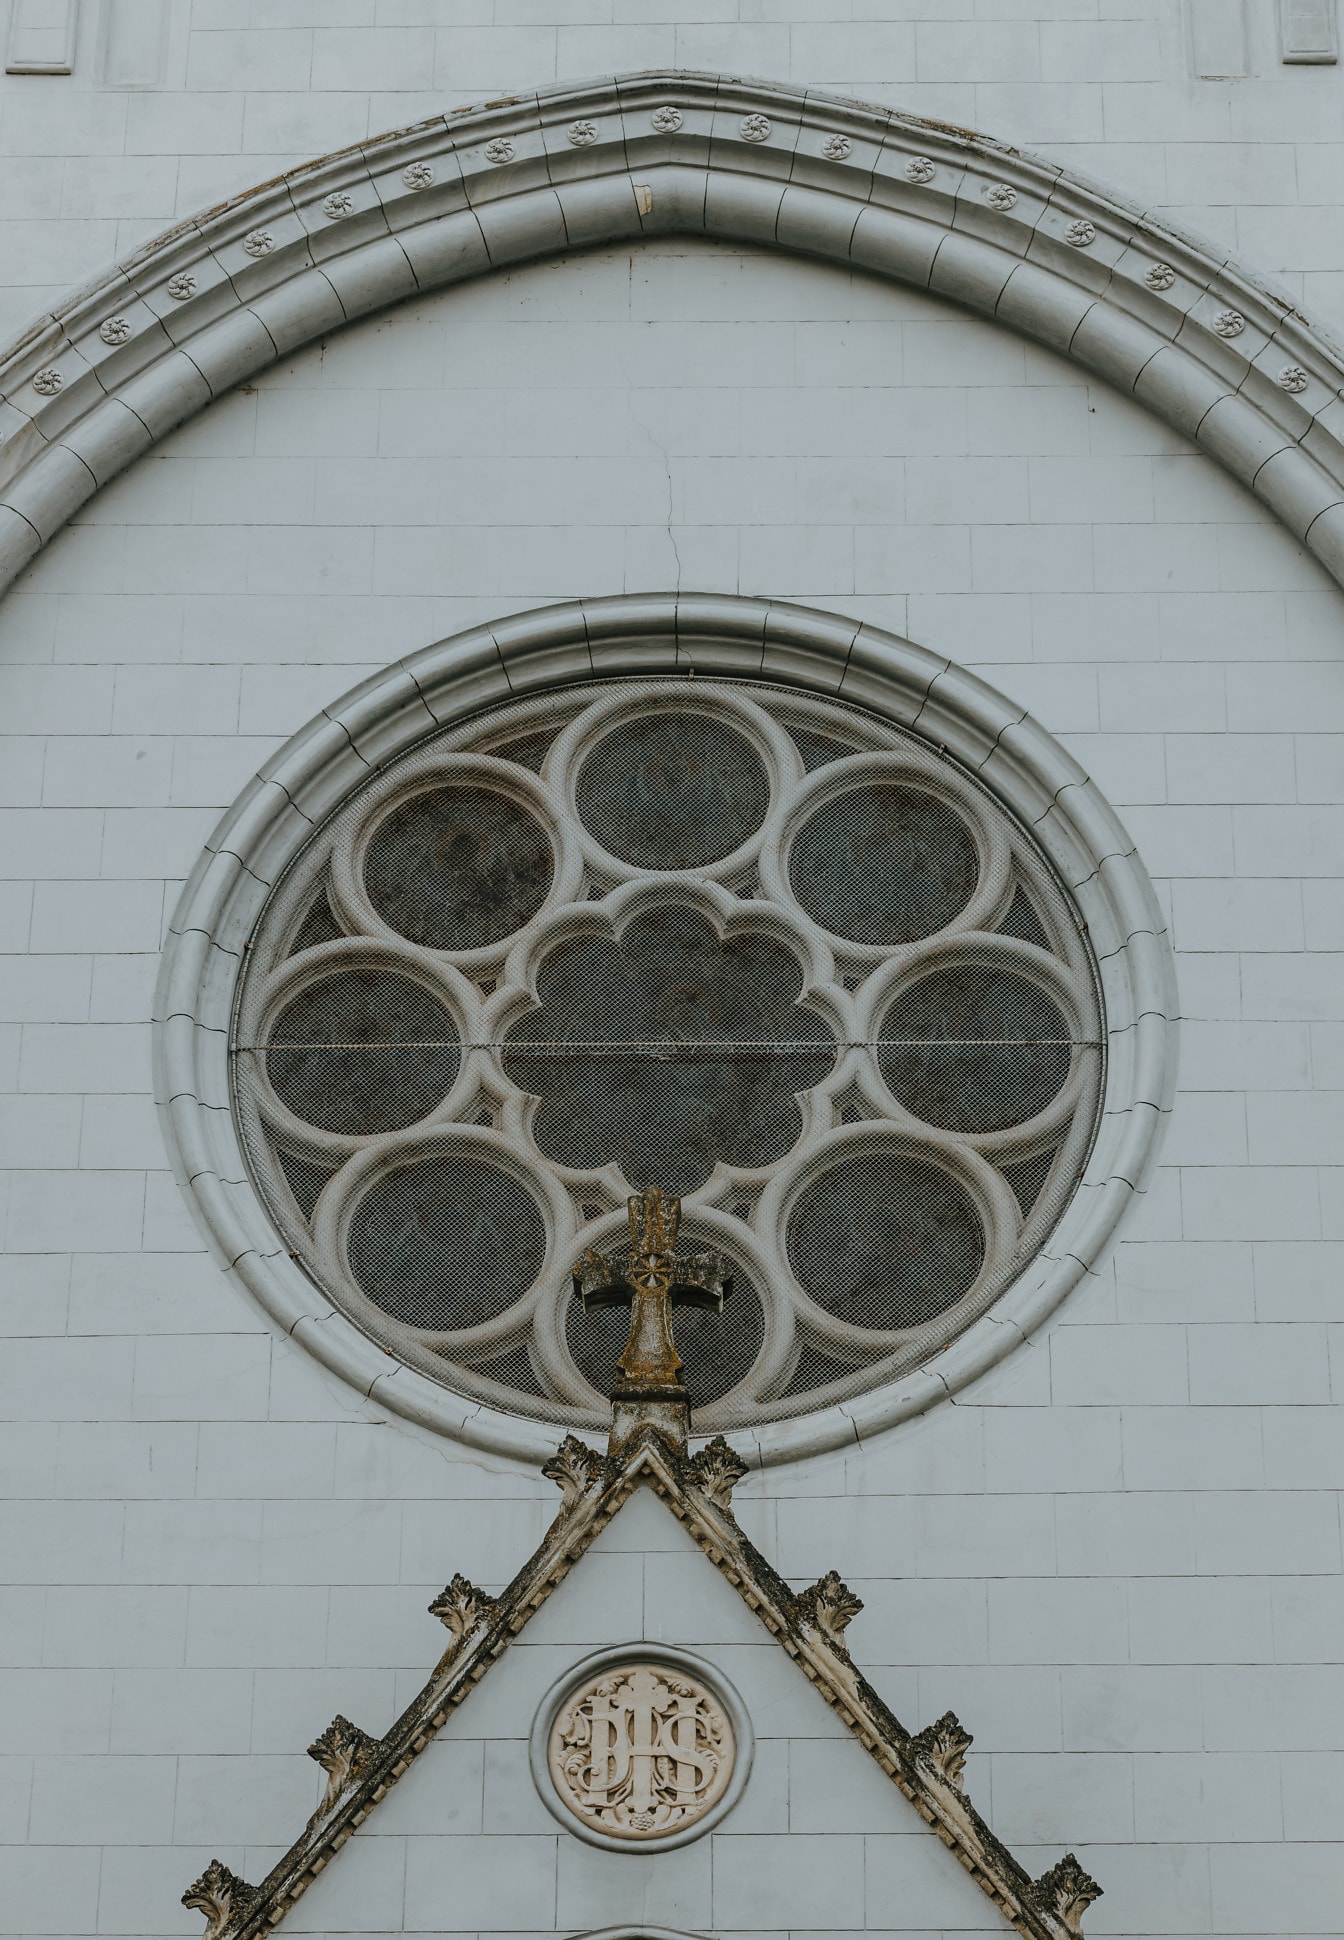 Udvendig af gotisk katedral med rundt vindue med dekorative detaljer